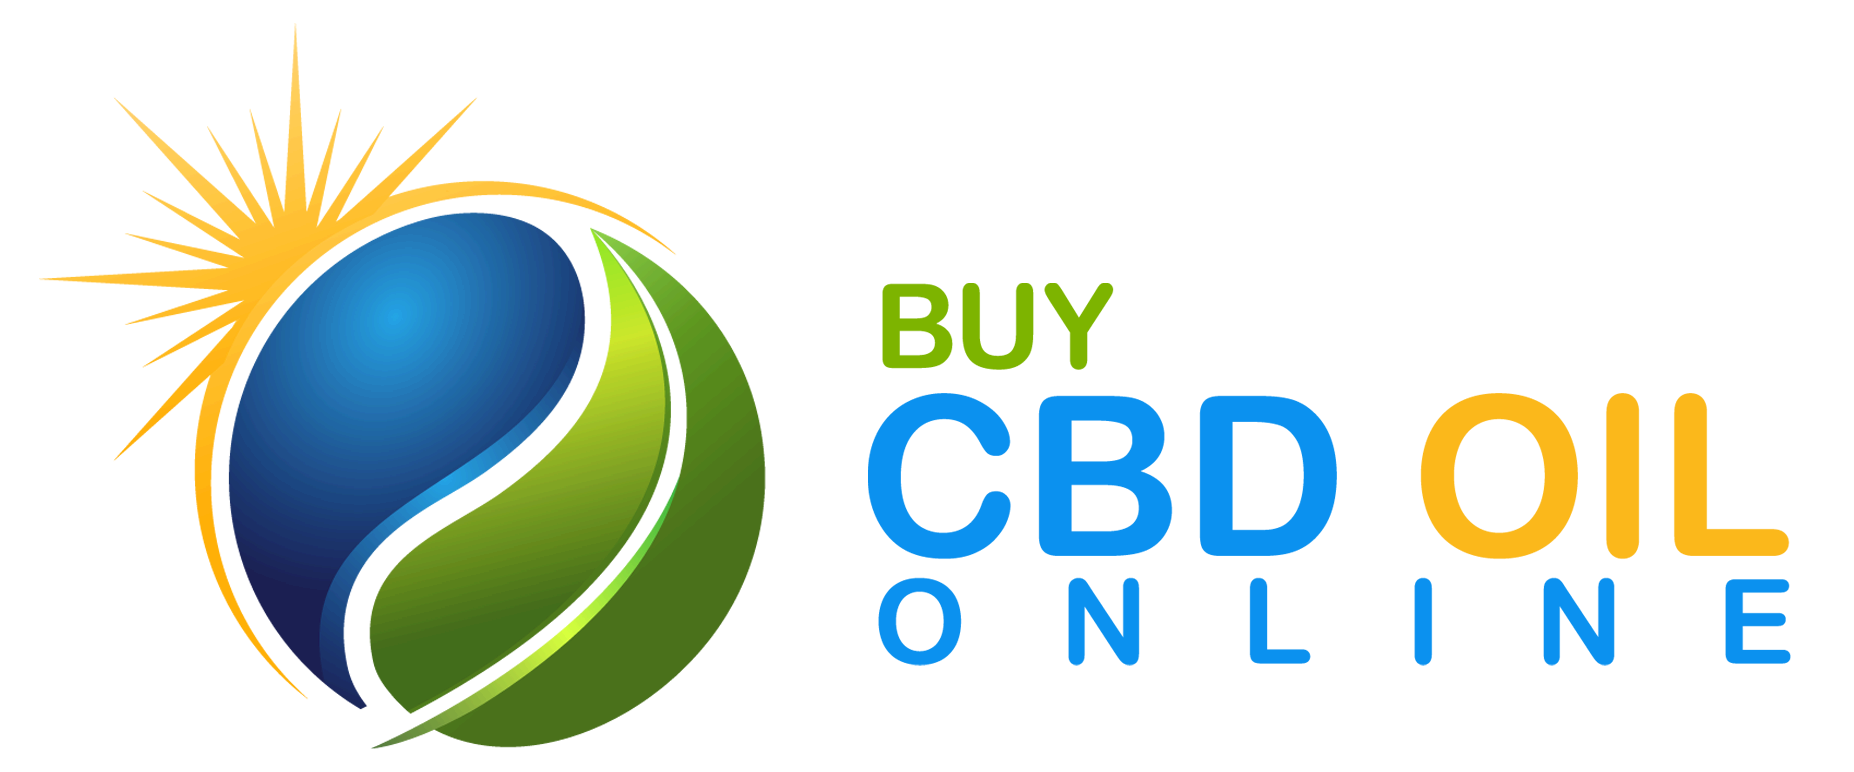 Buy CBD Oil Online